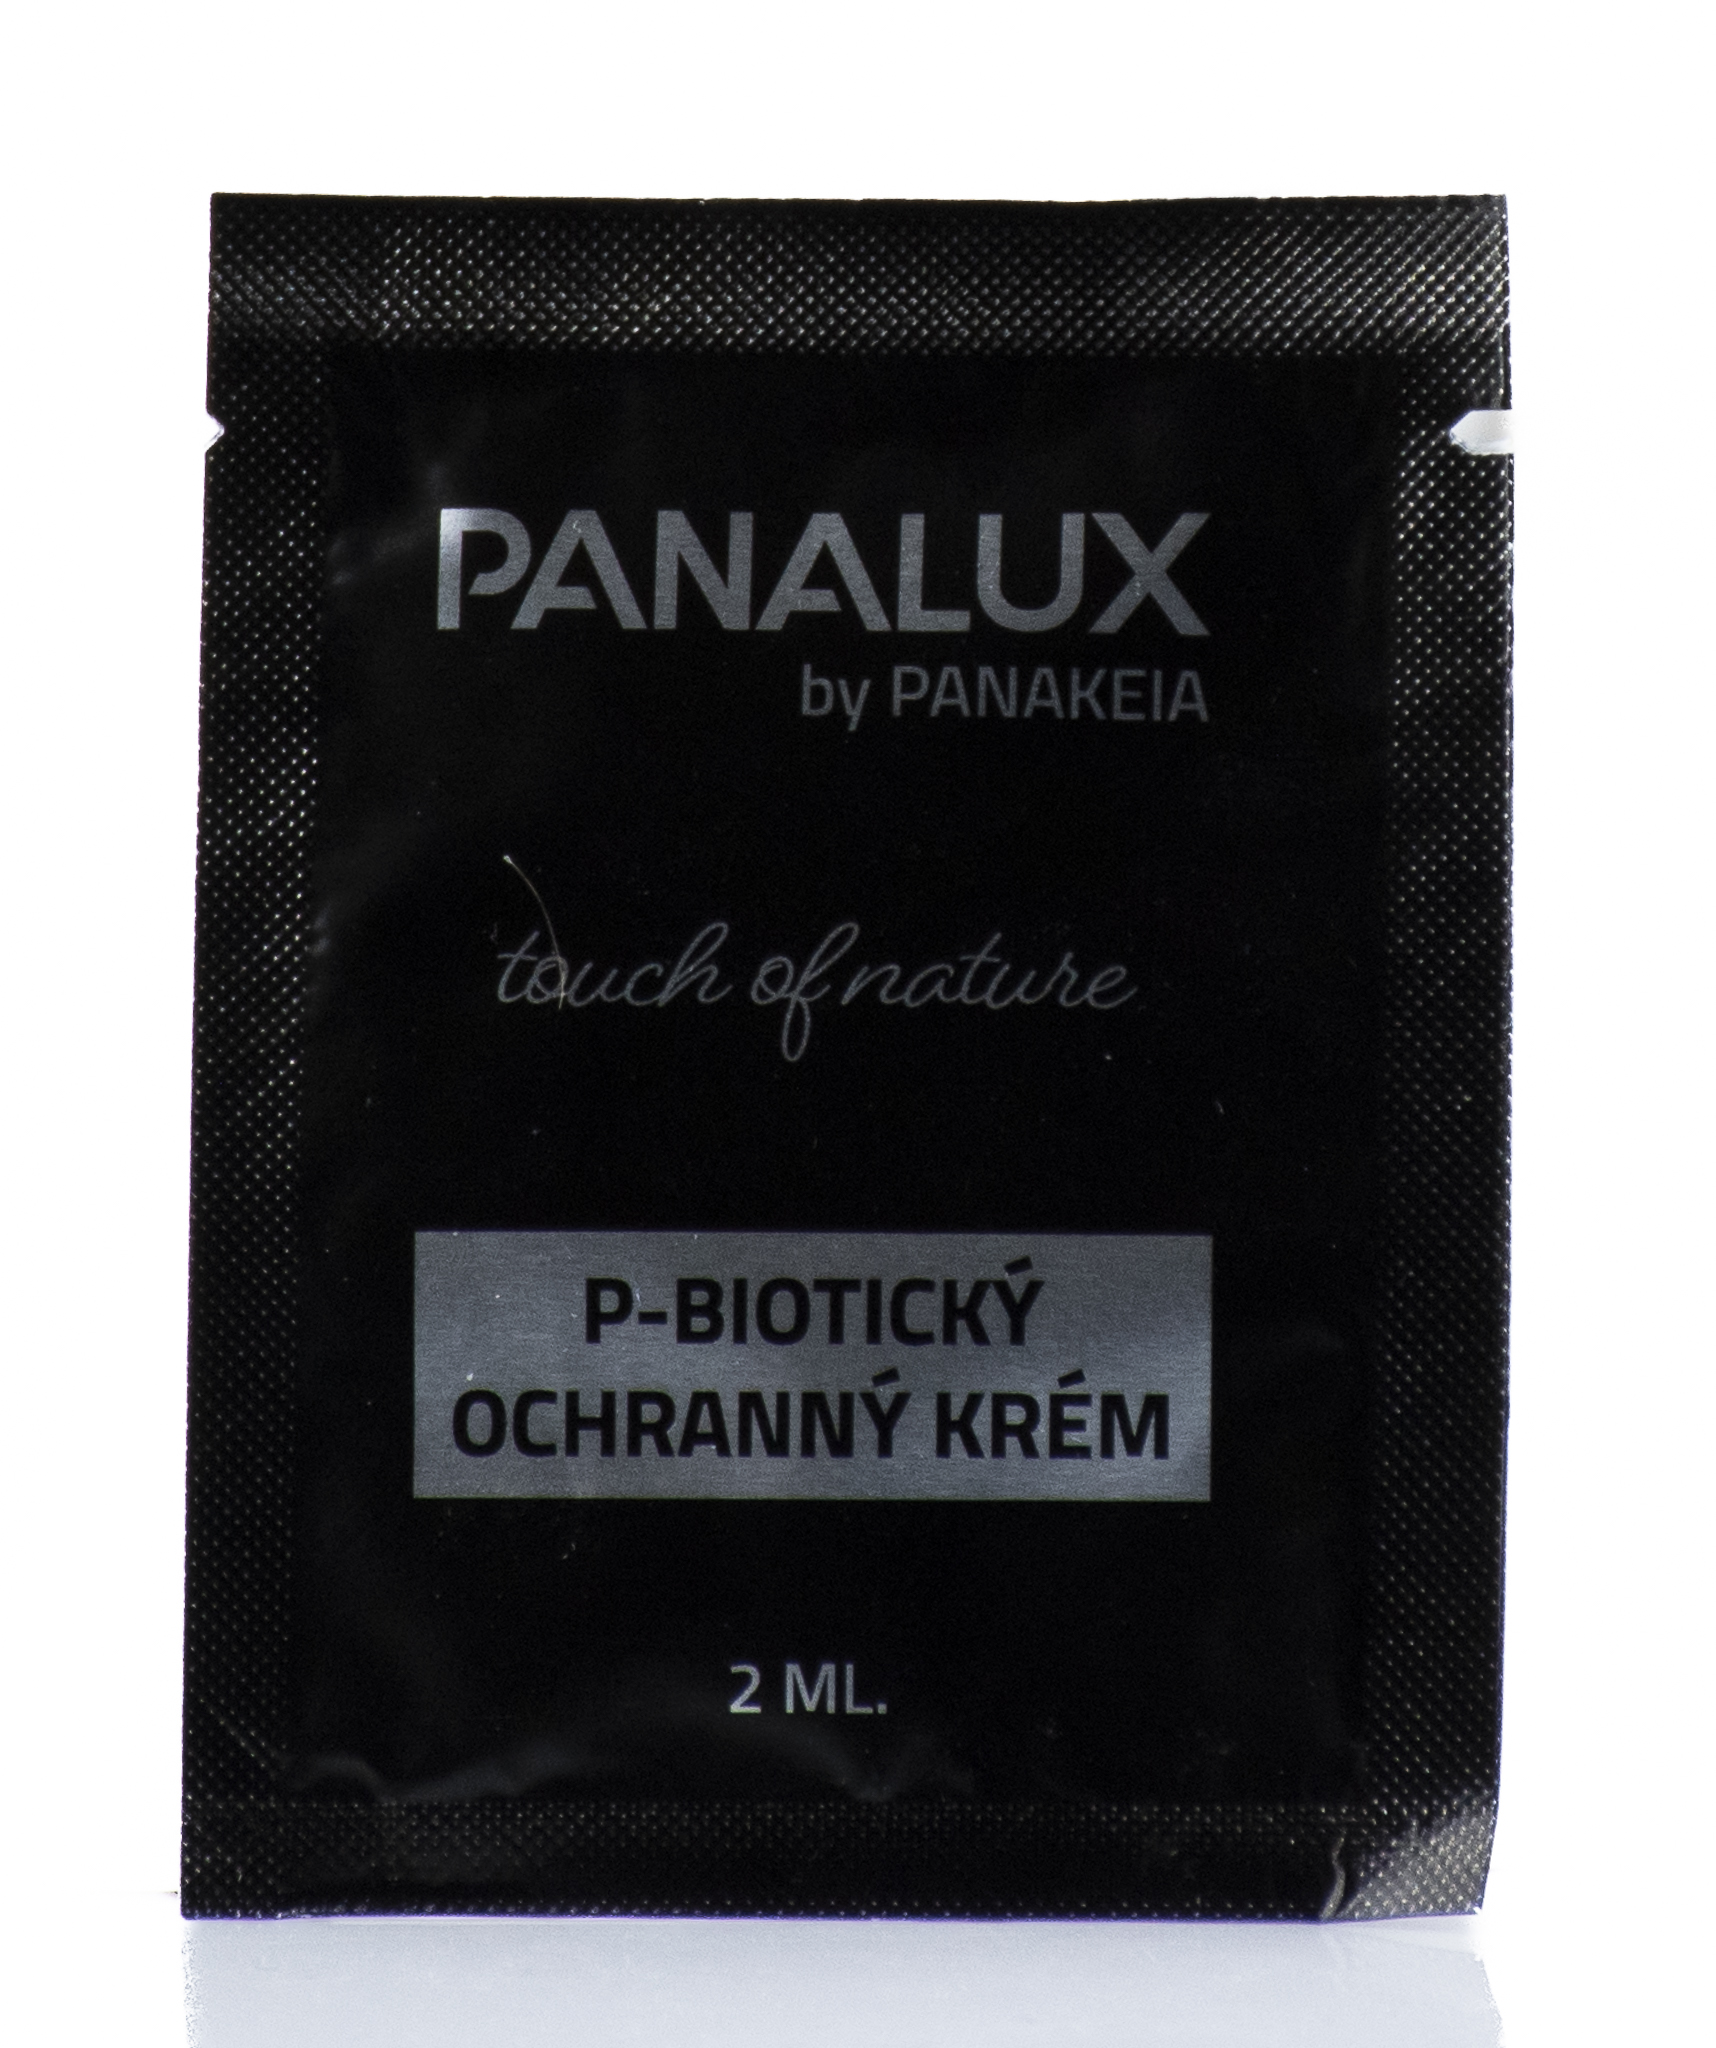 PANAKEIA (Vzorka) P-Biotický ochranný krém 2ml